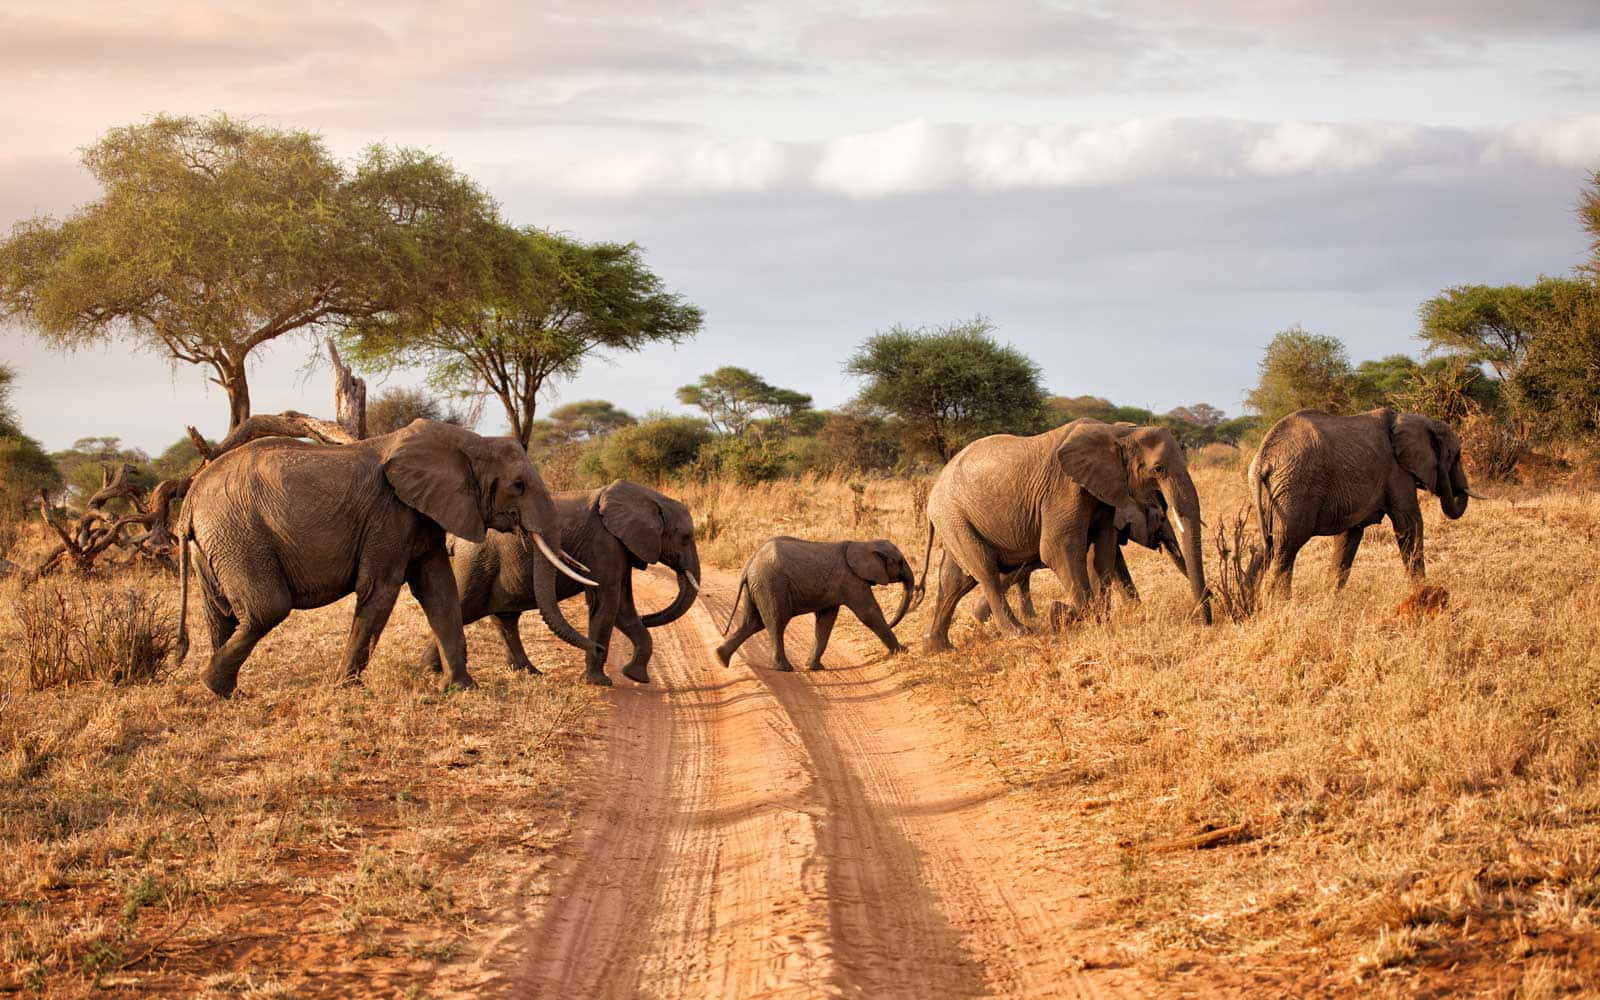 Imagende Safari Con Elefantes Africanos En Su Hábitat Natural